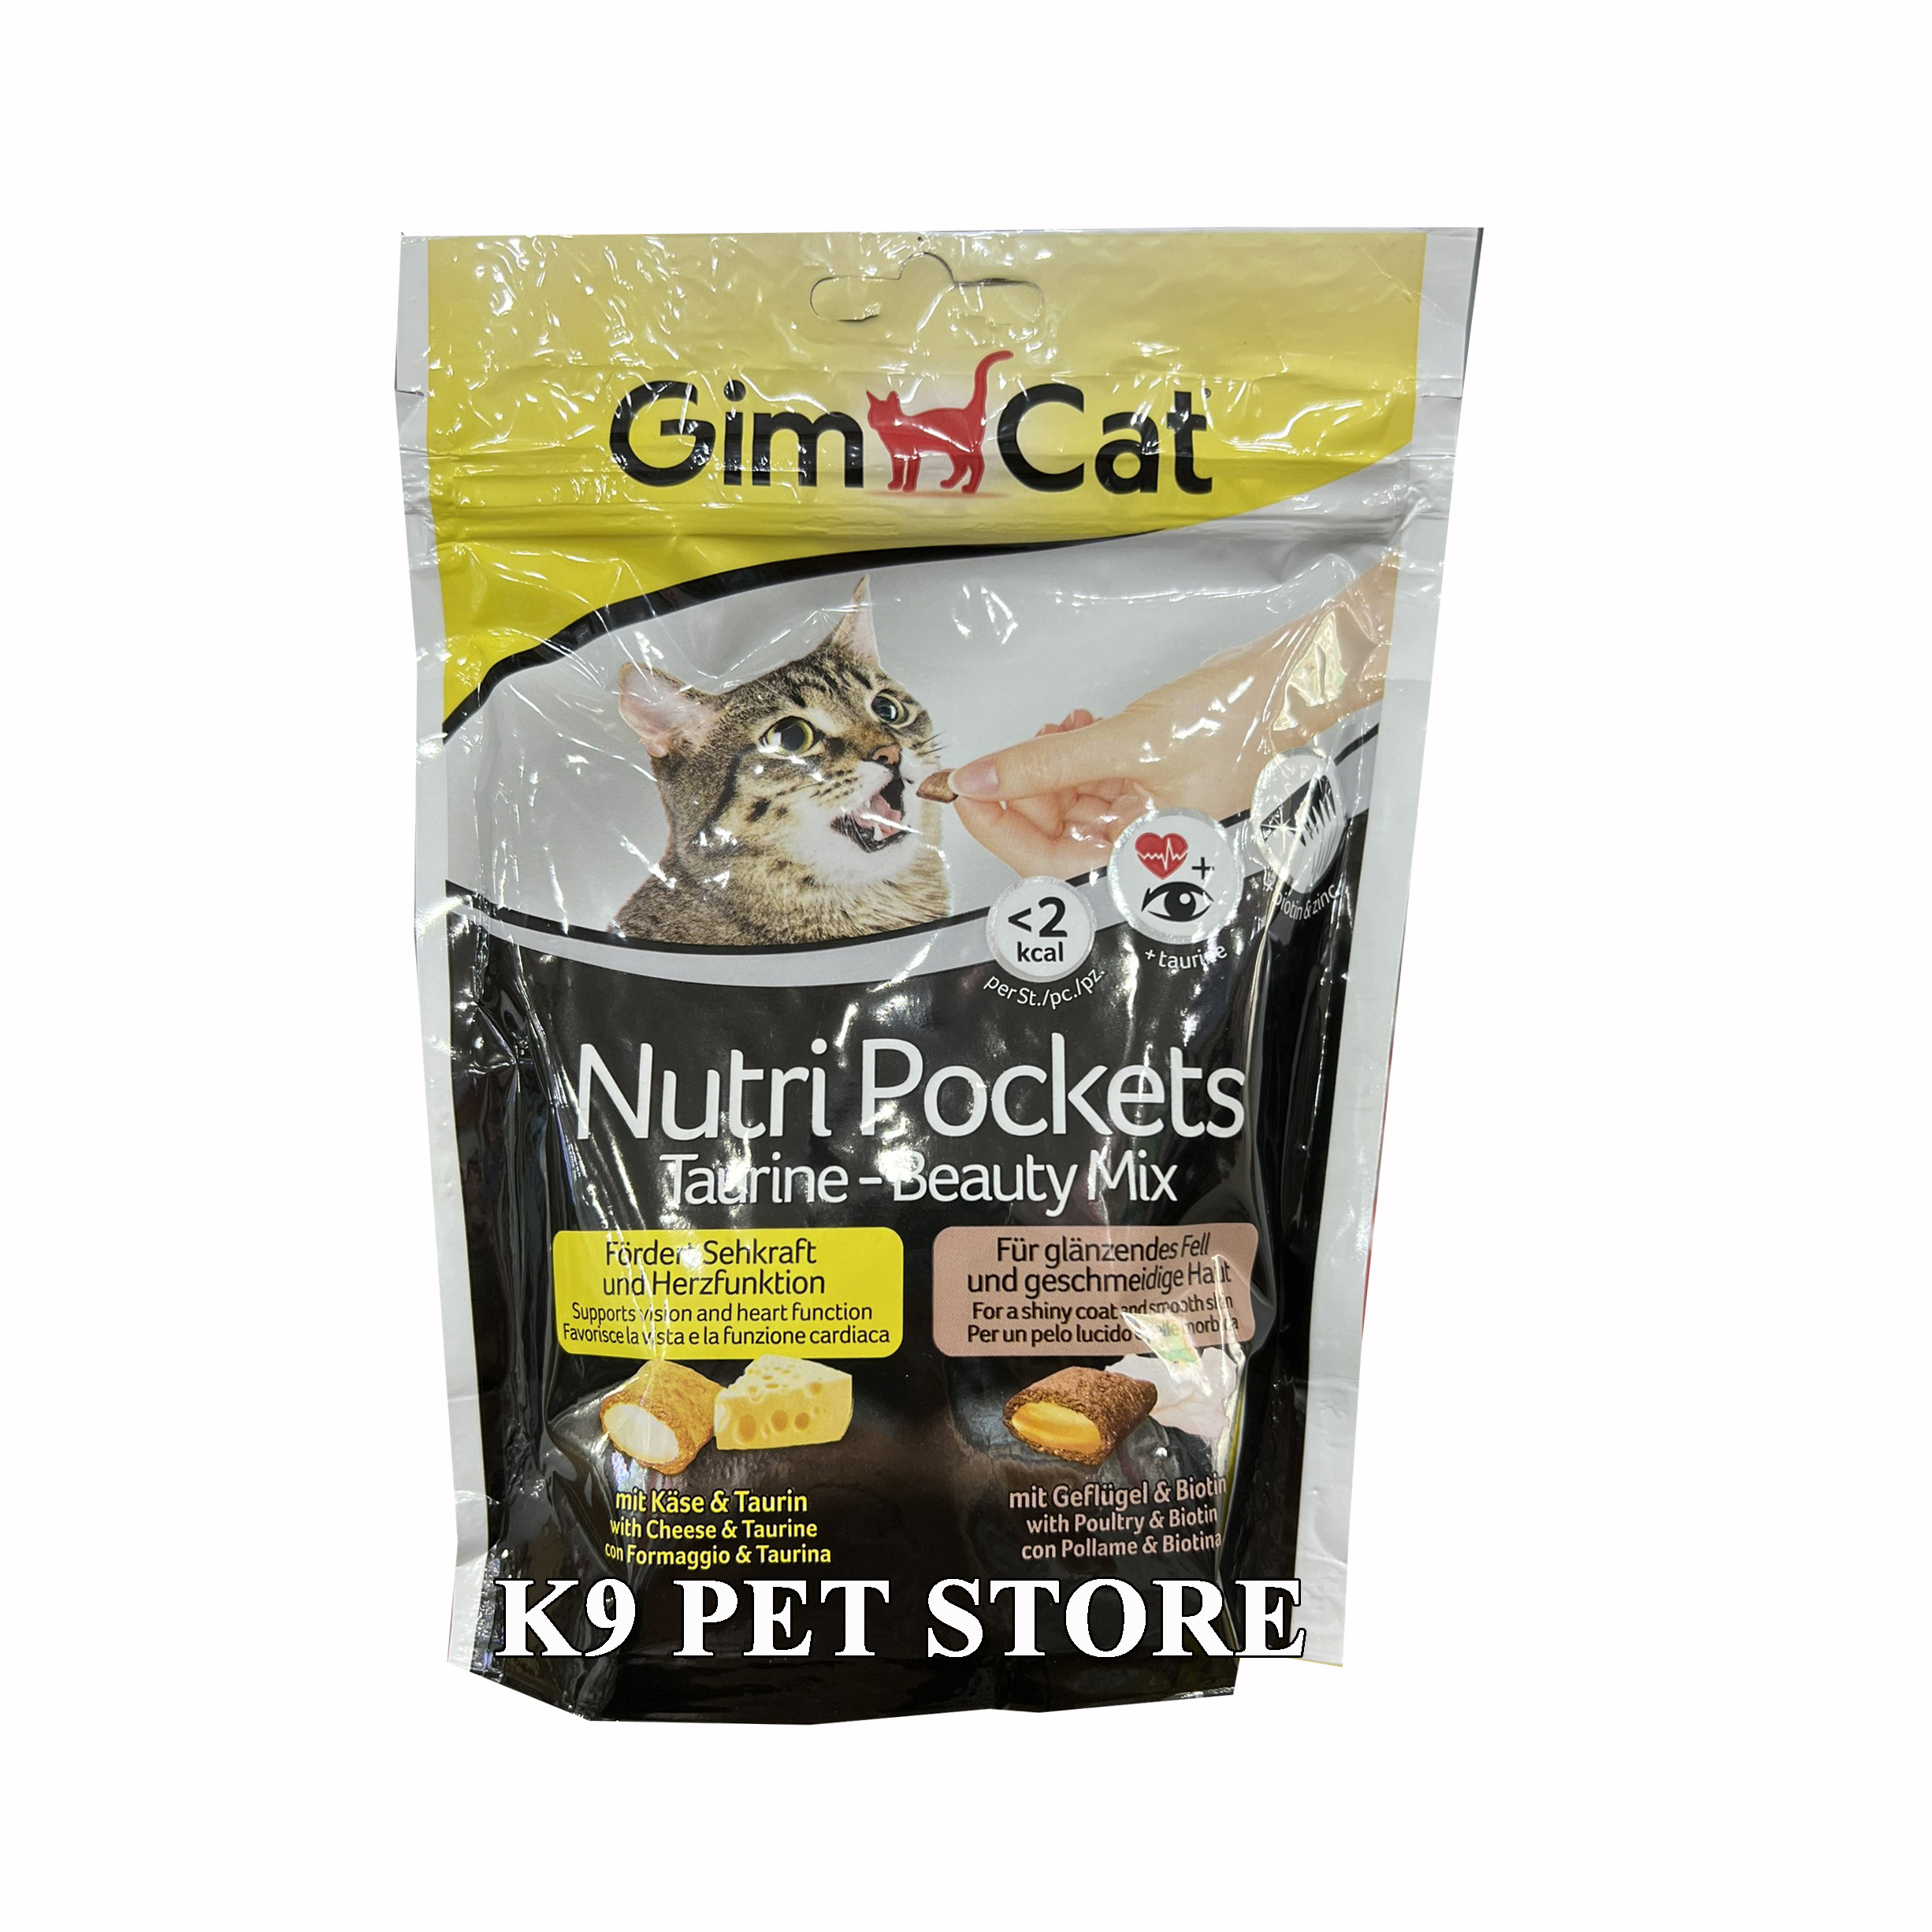 Snack mèo Gimcat Nutri Pockets Taurine - Beauty Mix 150g - vị gà và phô mai